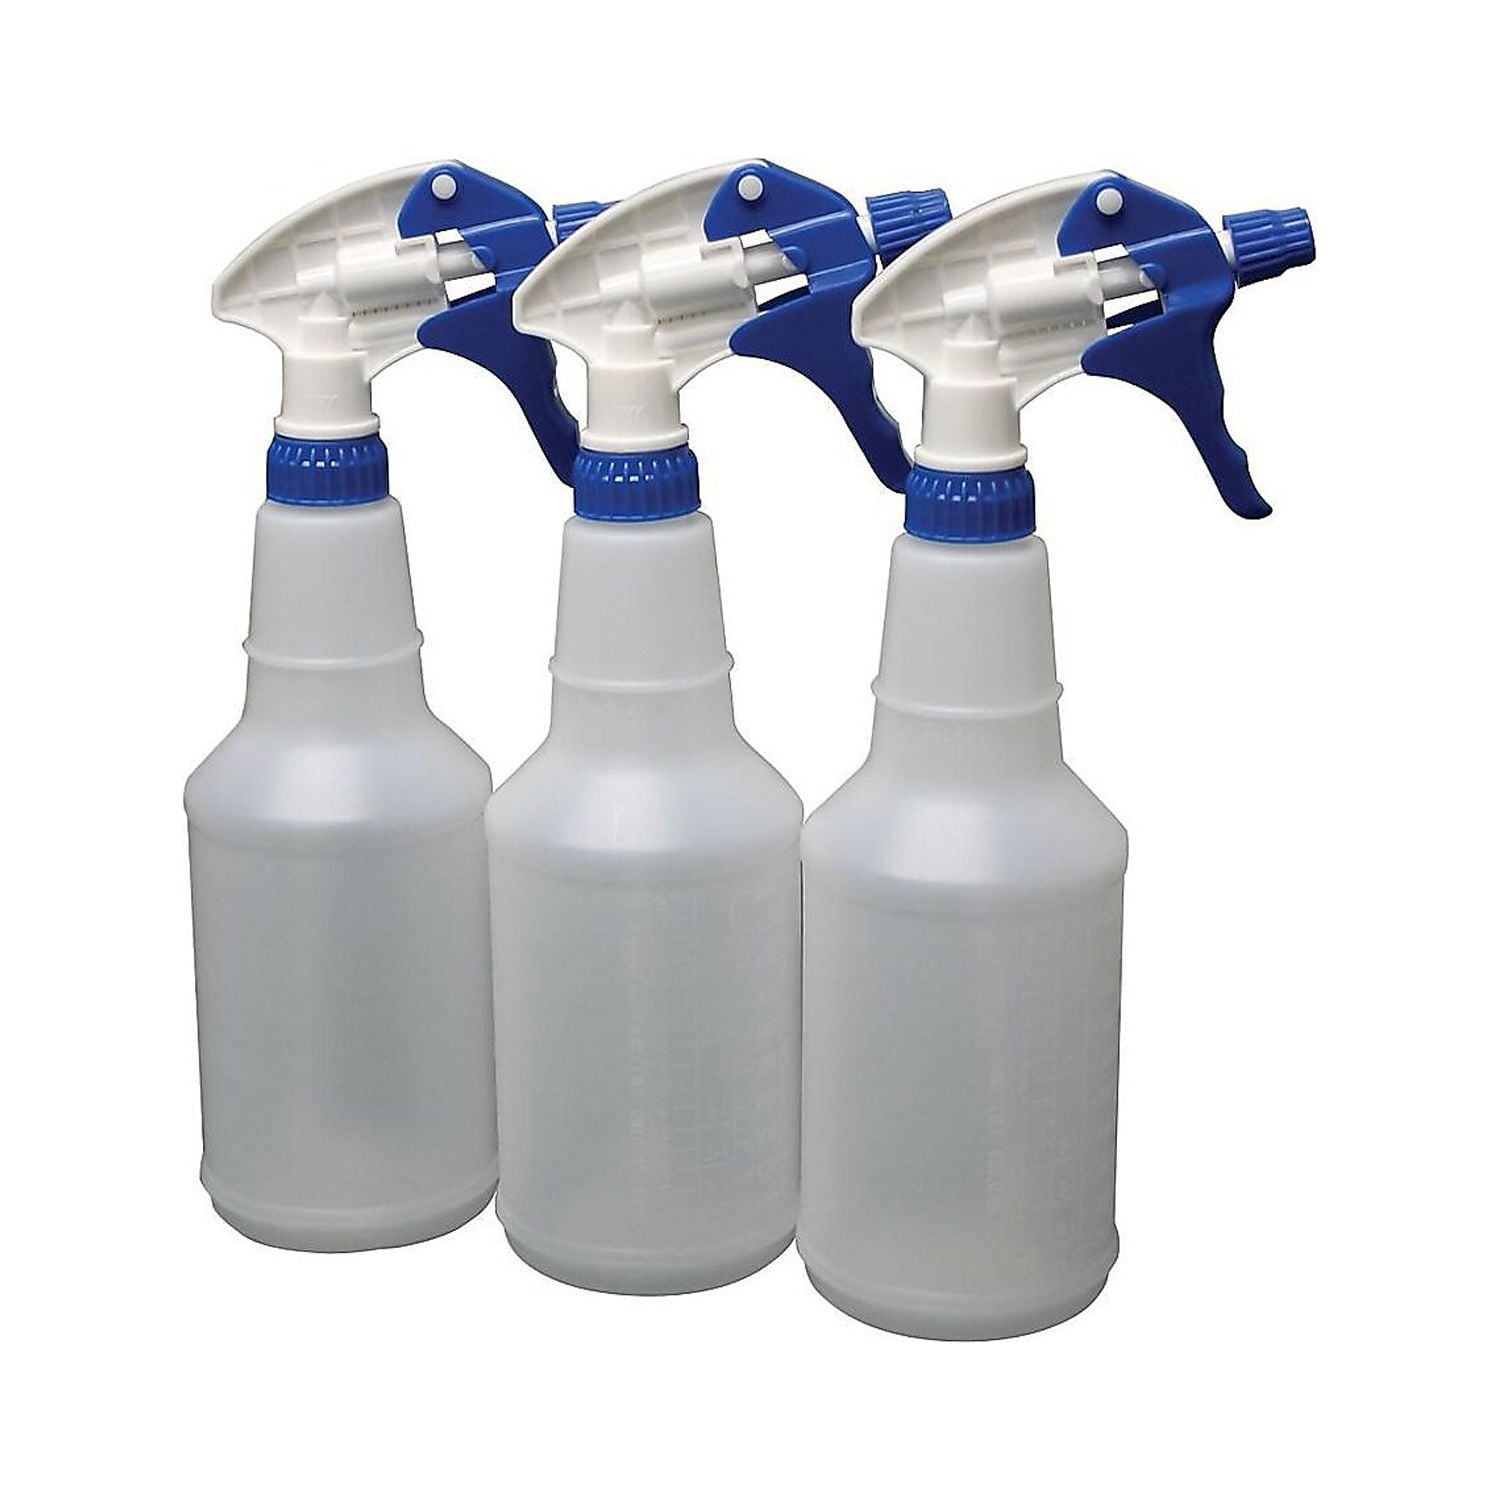 StrikeHold 8oz Spray Bottles 3-Pack